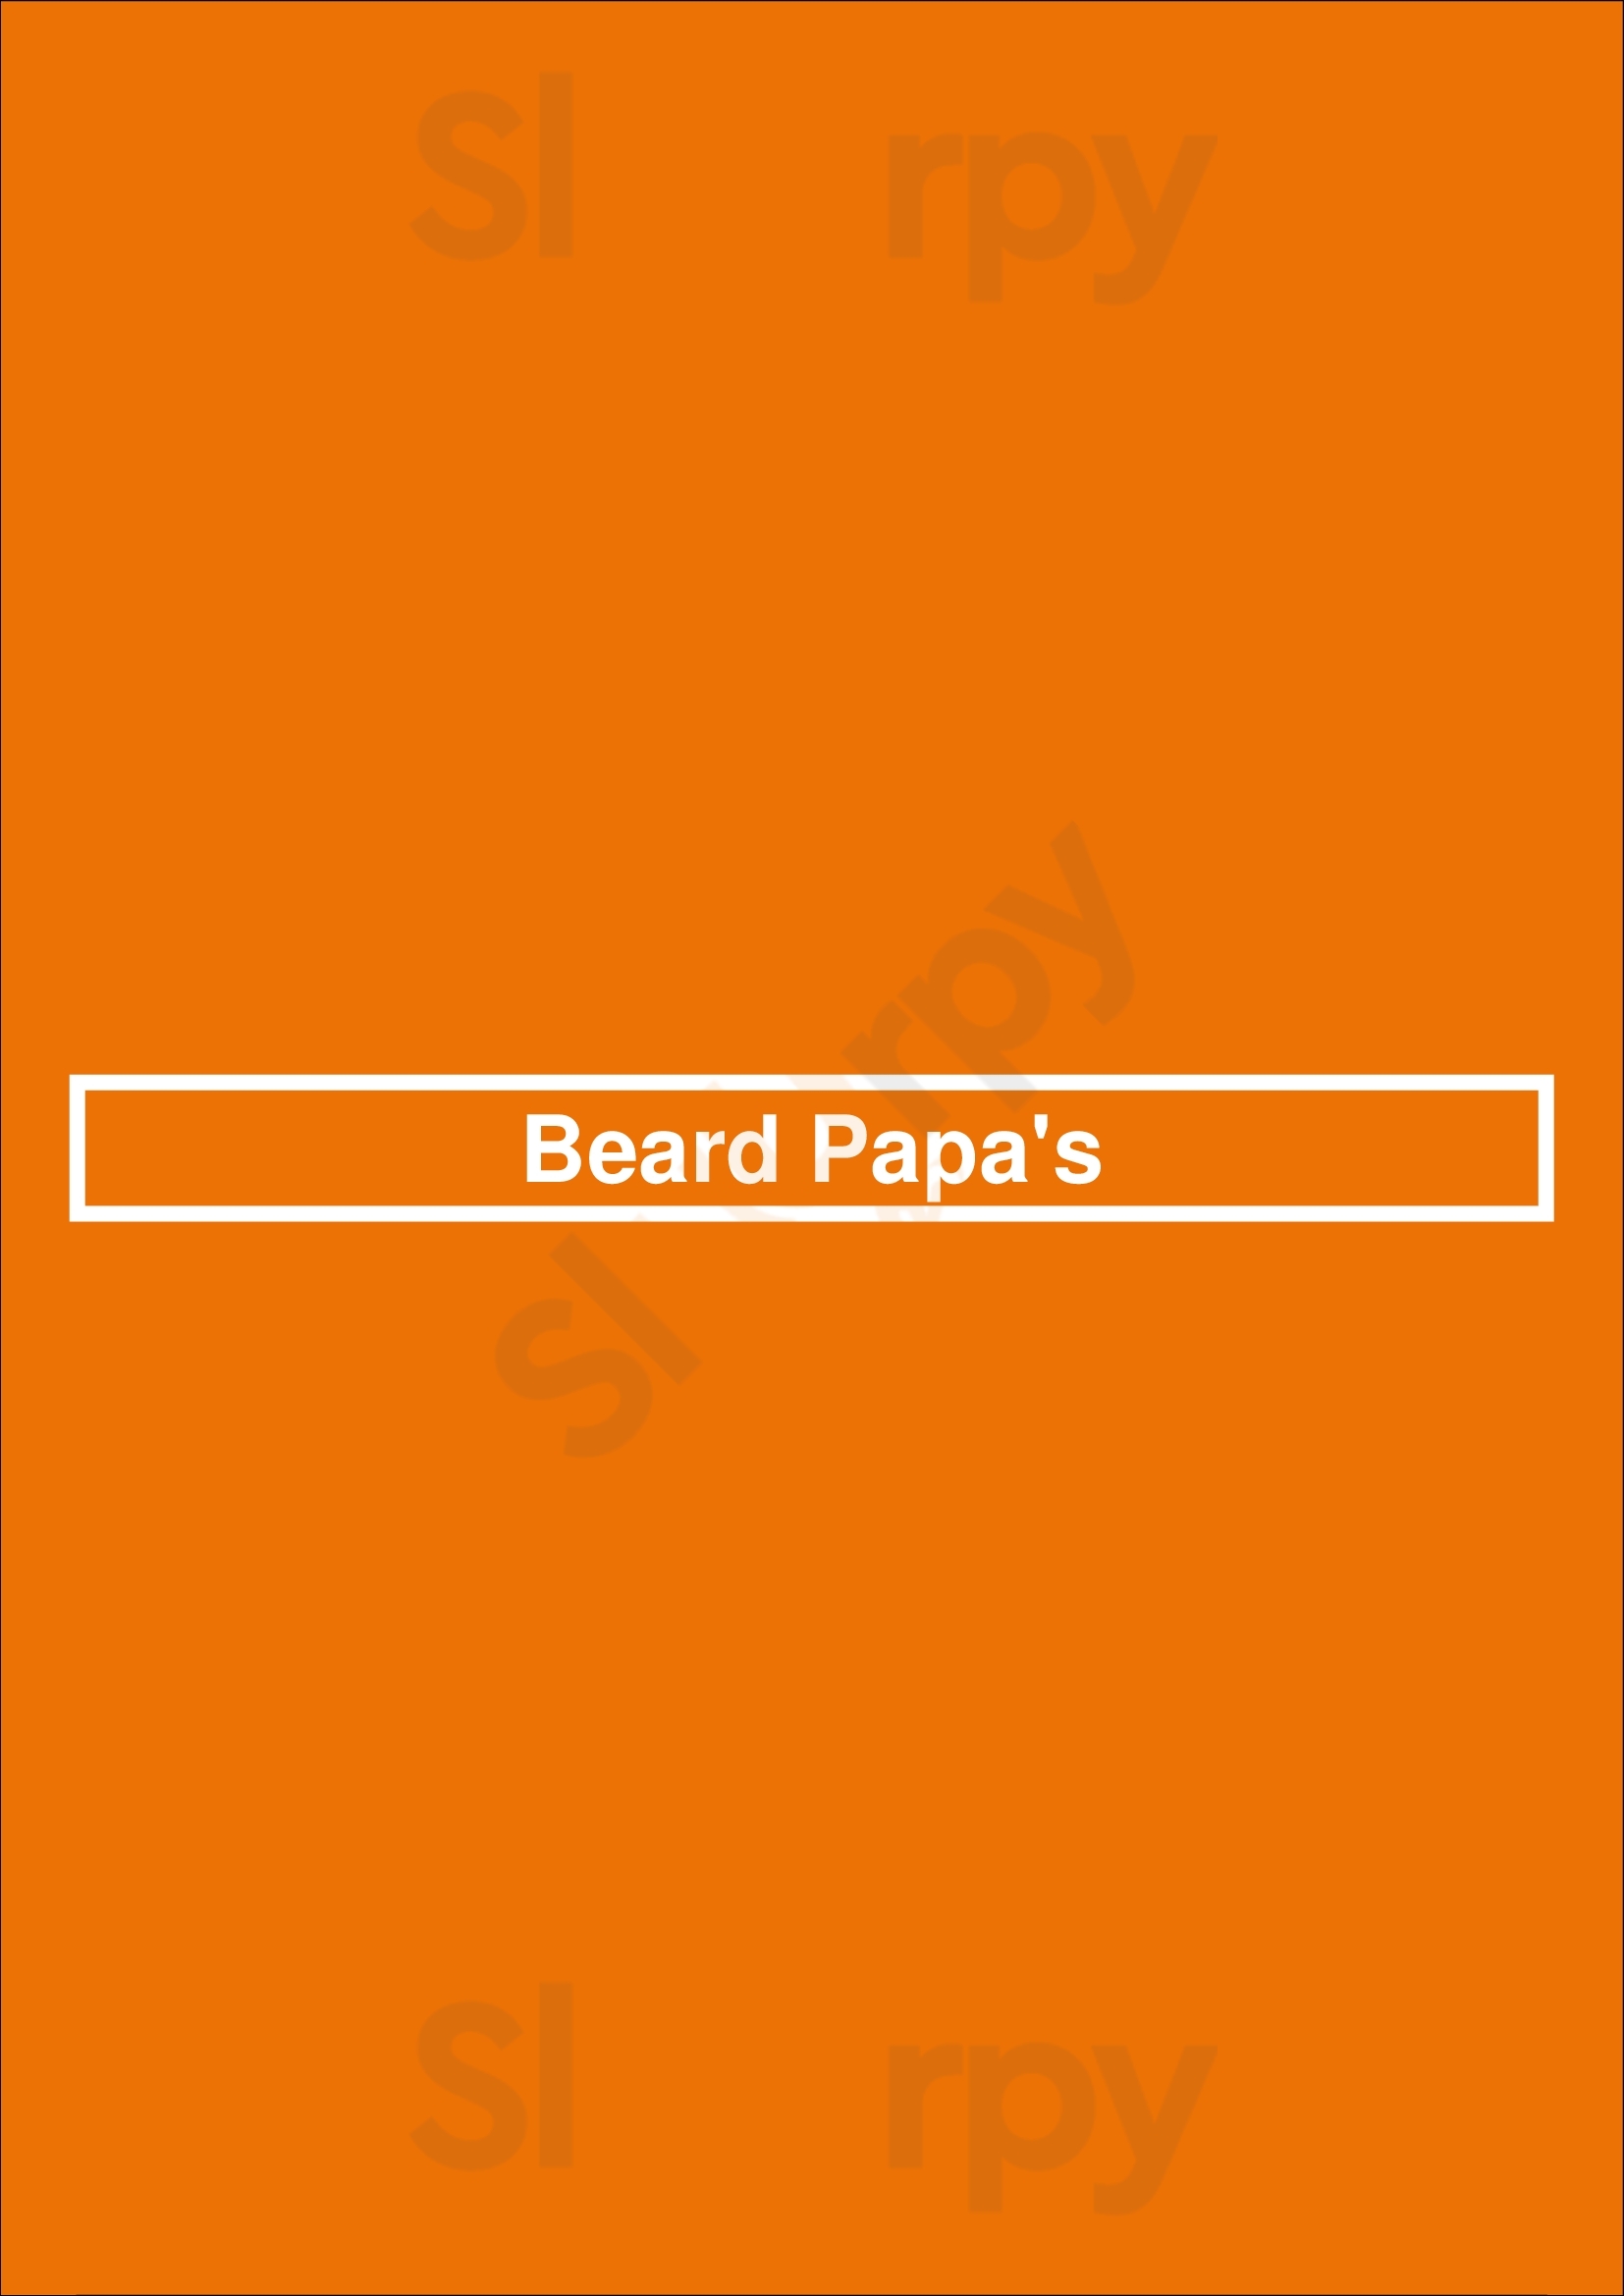 Beard Papa's Los Angeles Menu - 1